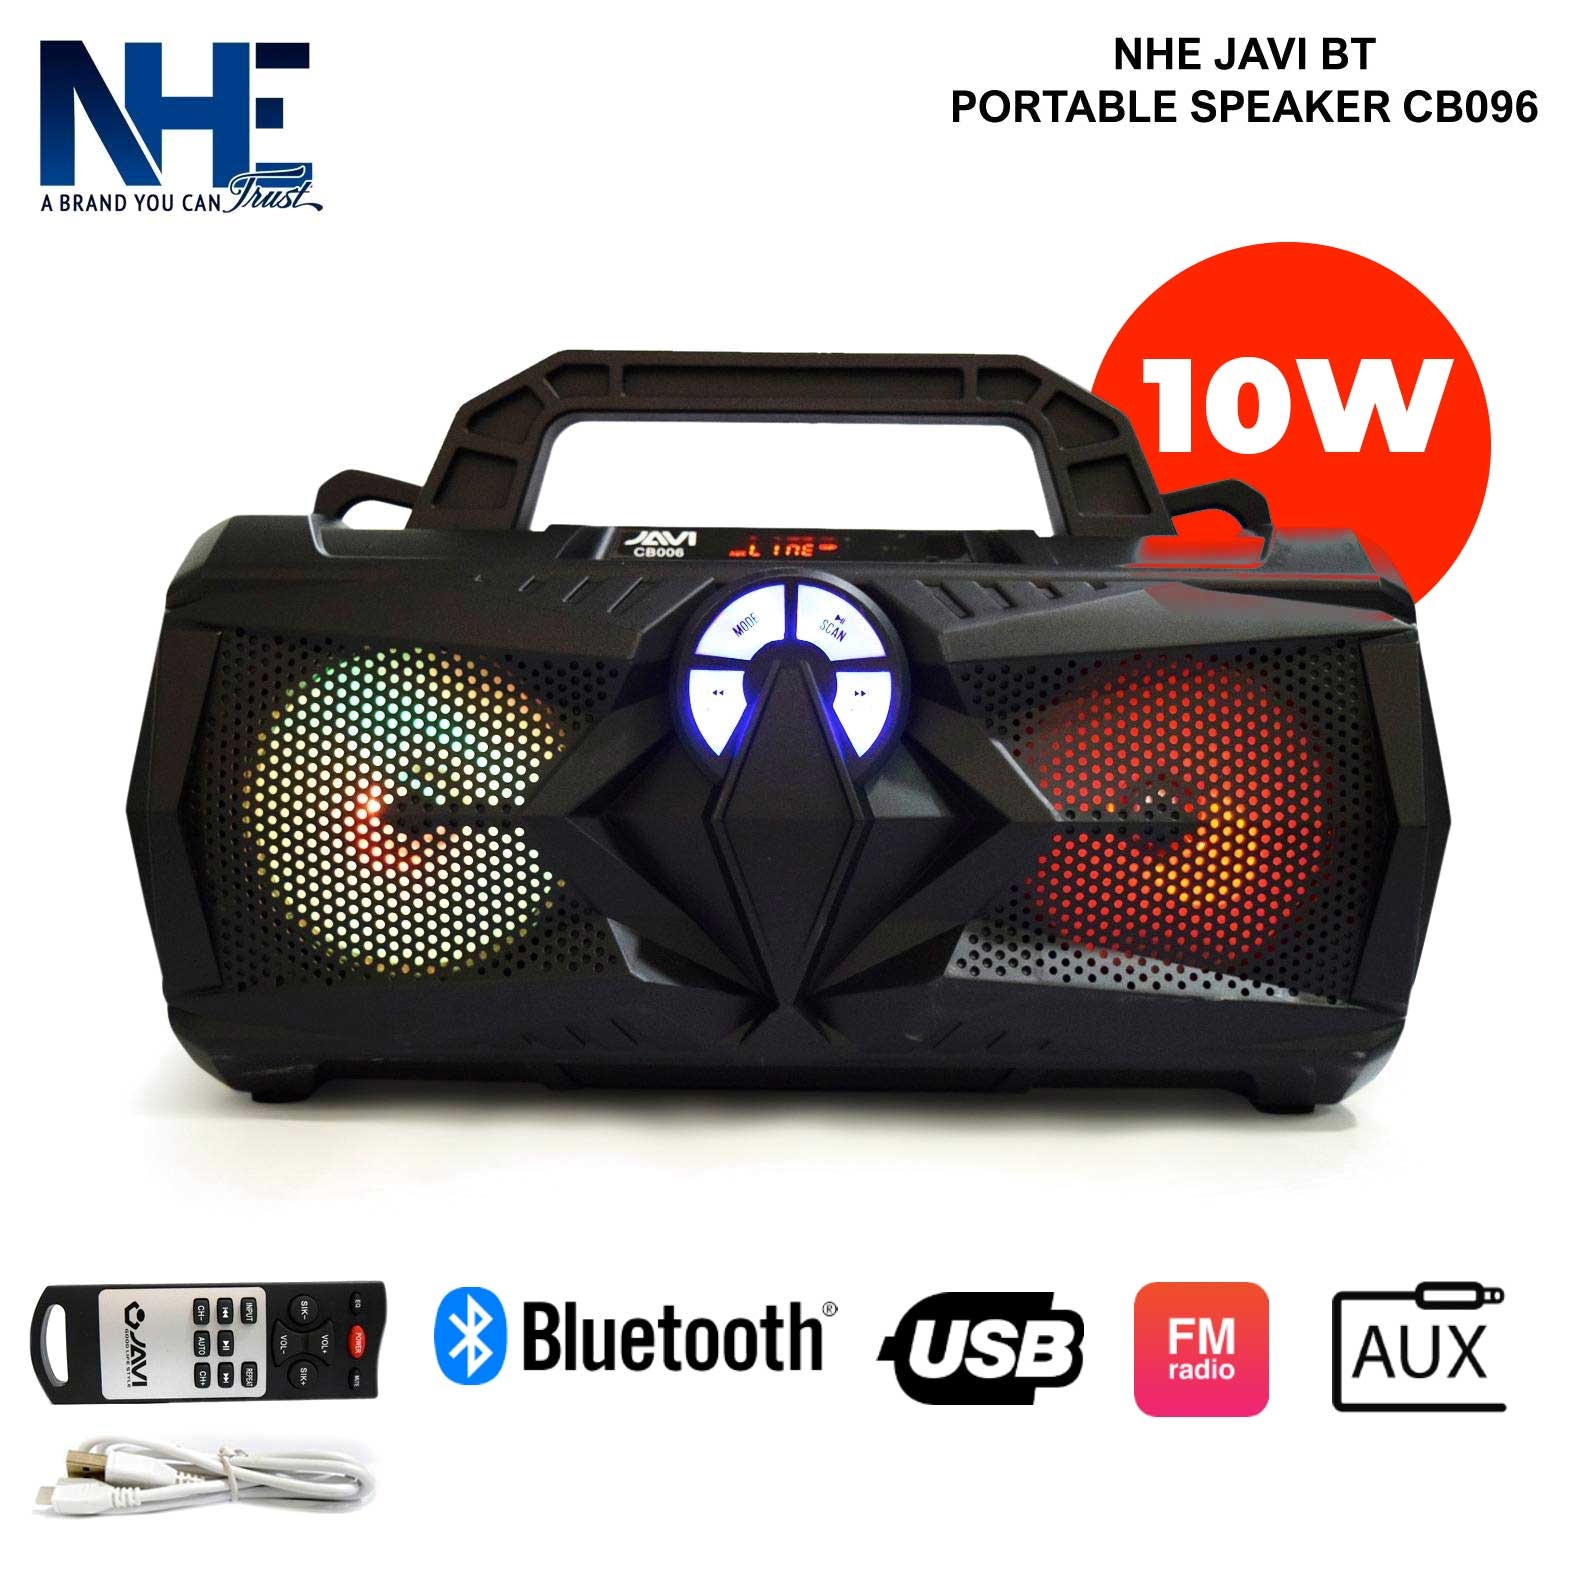 NHE Javi BT Portable Speaker CB006